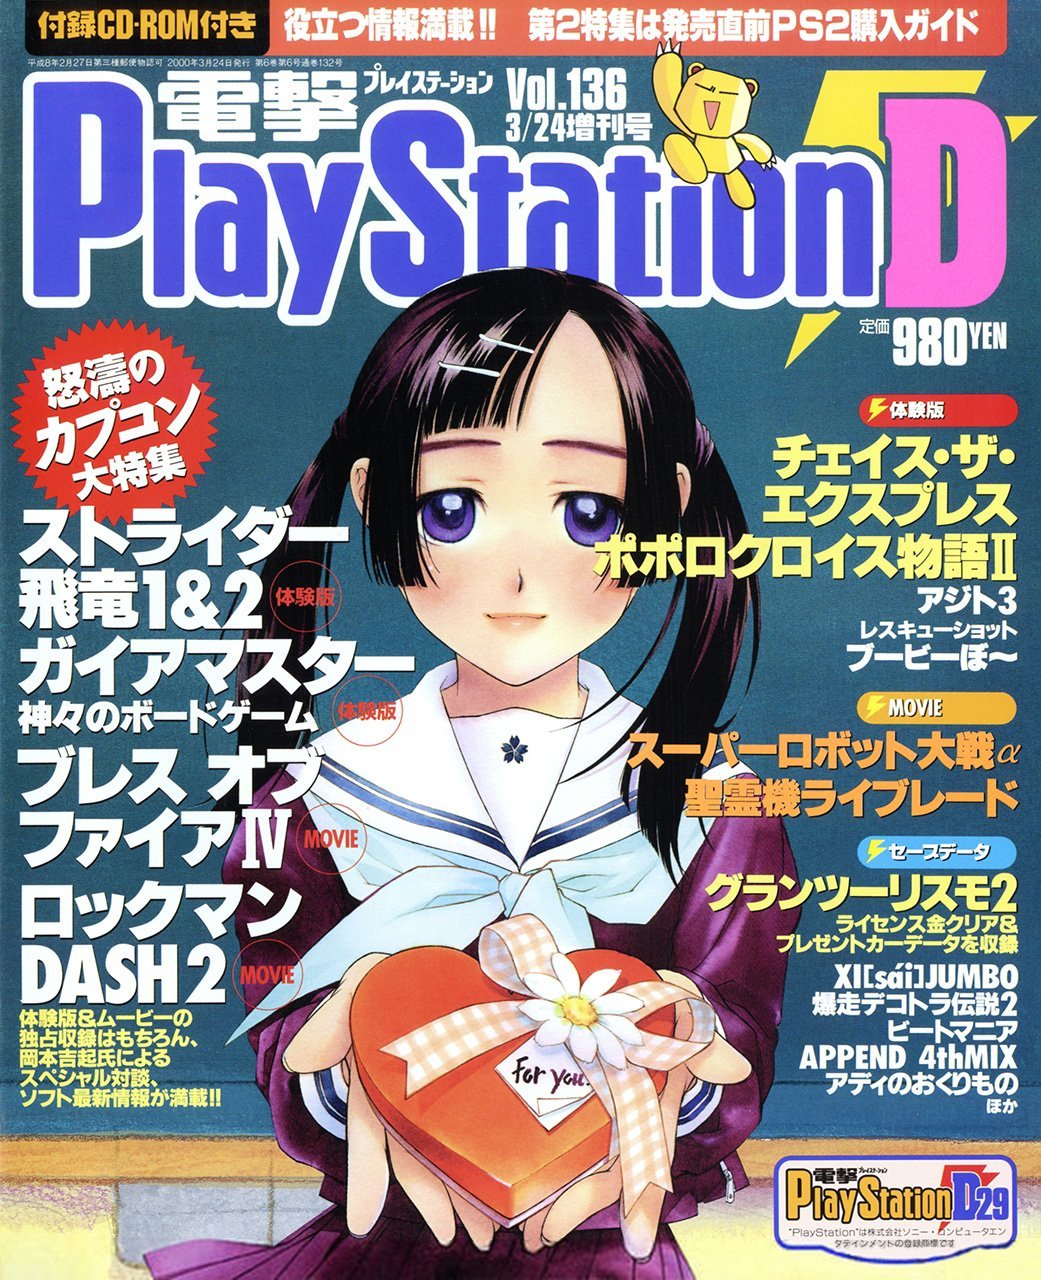 Dengeki PlayStation 136 (March 24, 2000)